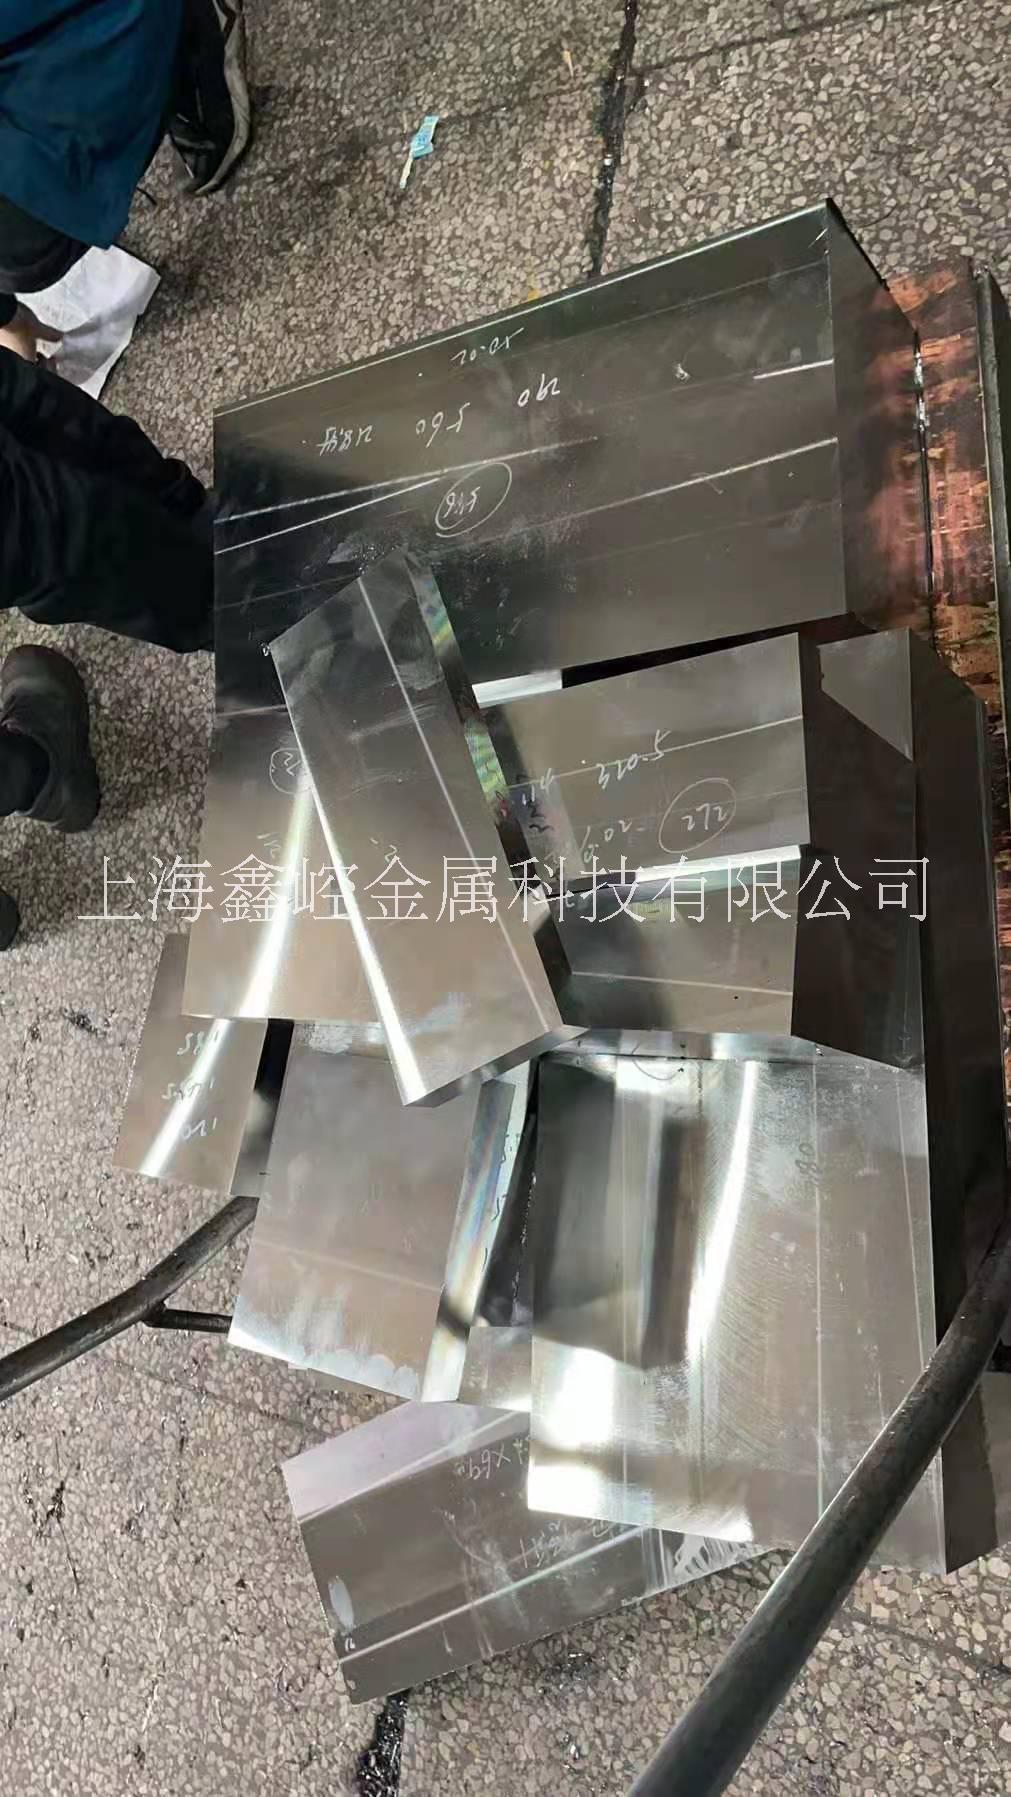 上海厂家批发零售各类模具材料 模具加工 模具定制 工具钢高速钢定制